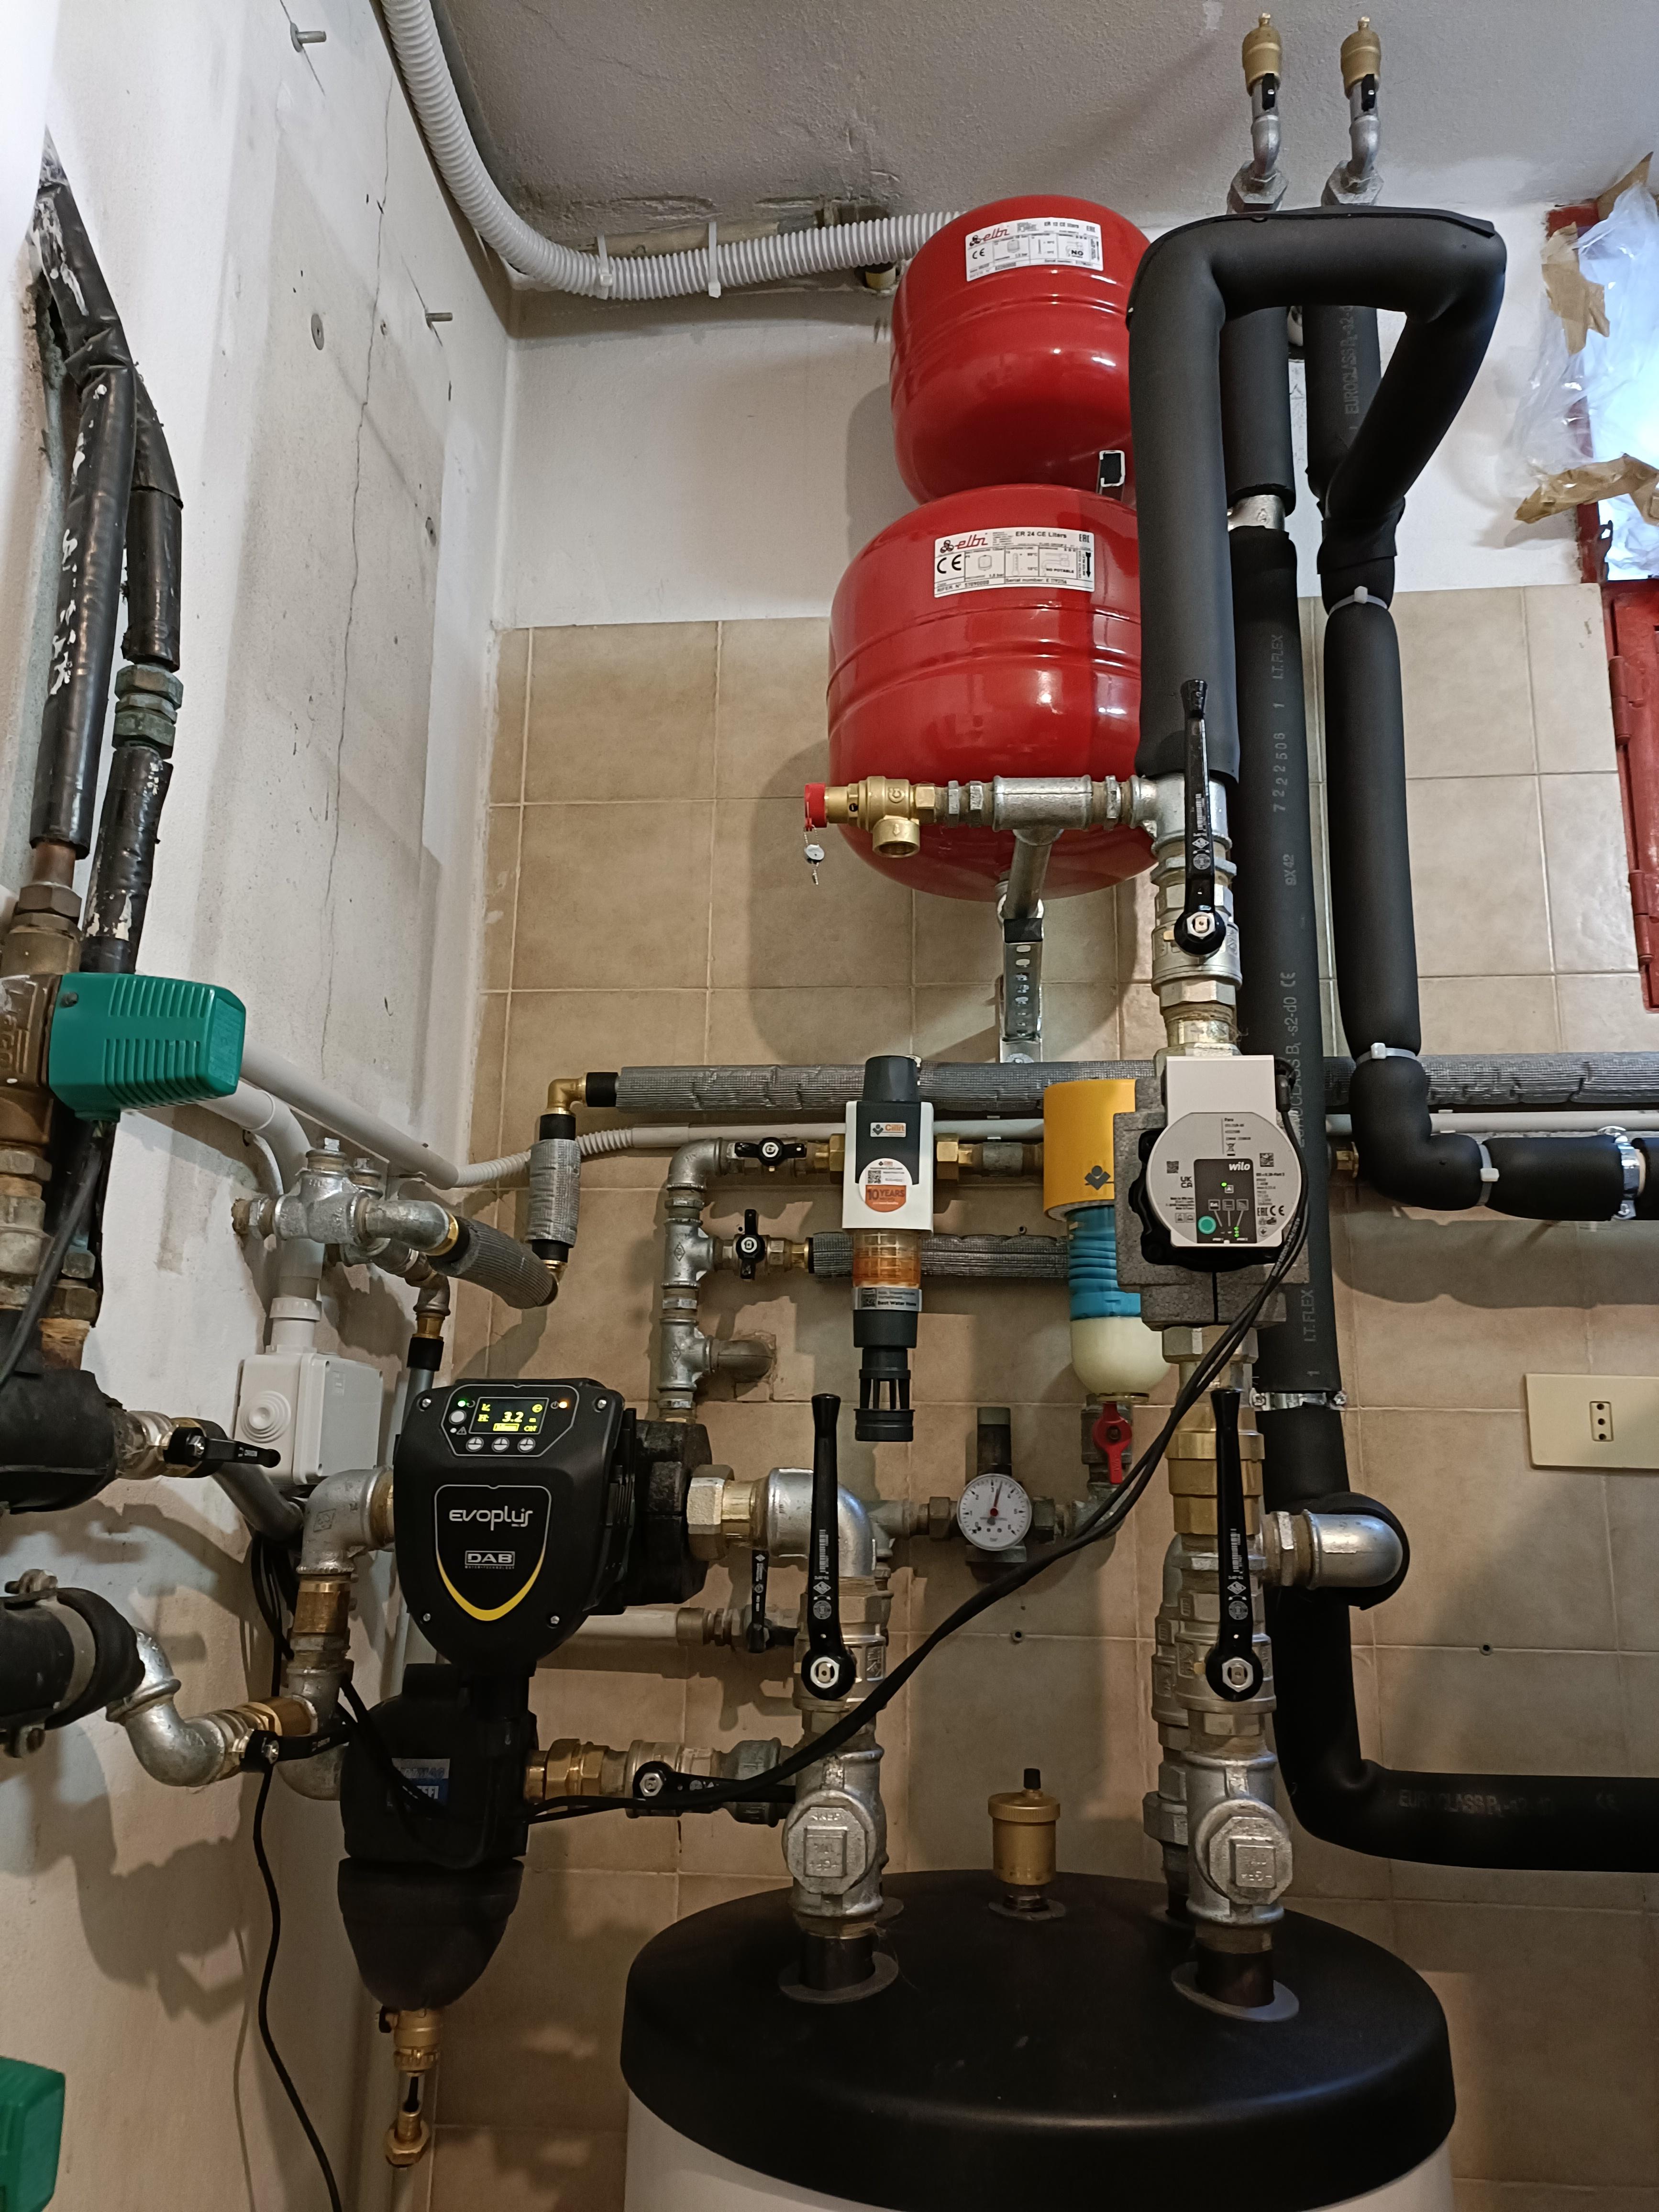 Installazione pompa di calore Stiebel Eltron realizzato da HF Impianti,  a Monza